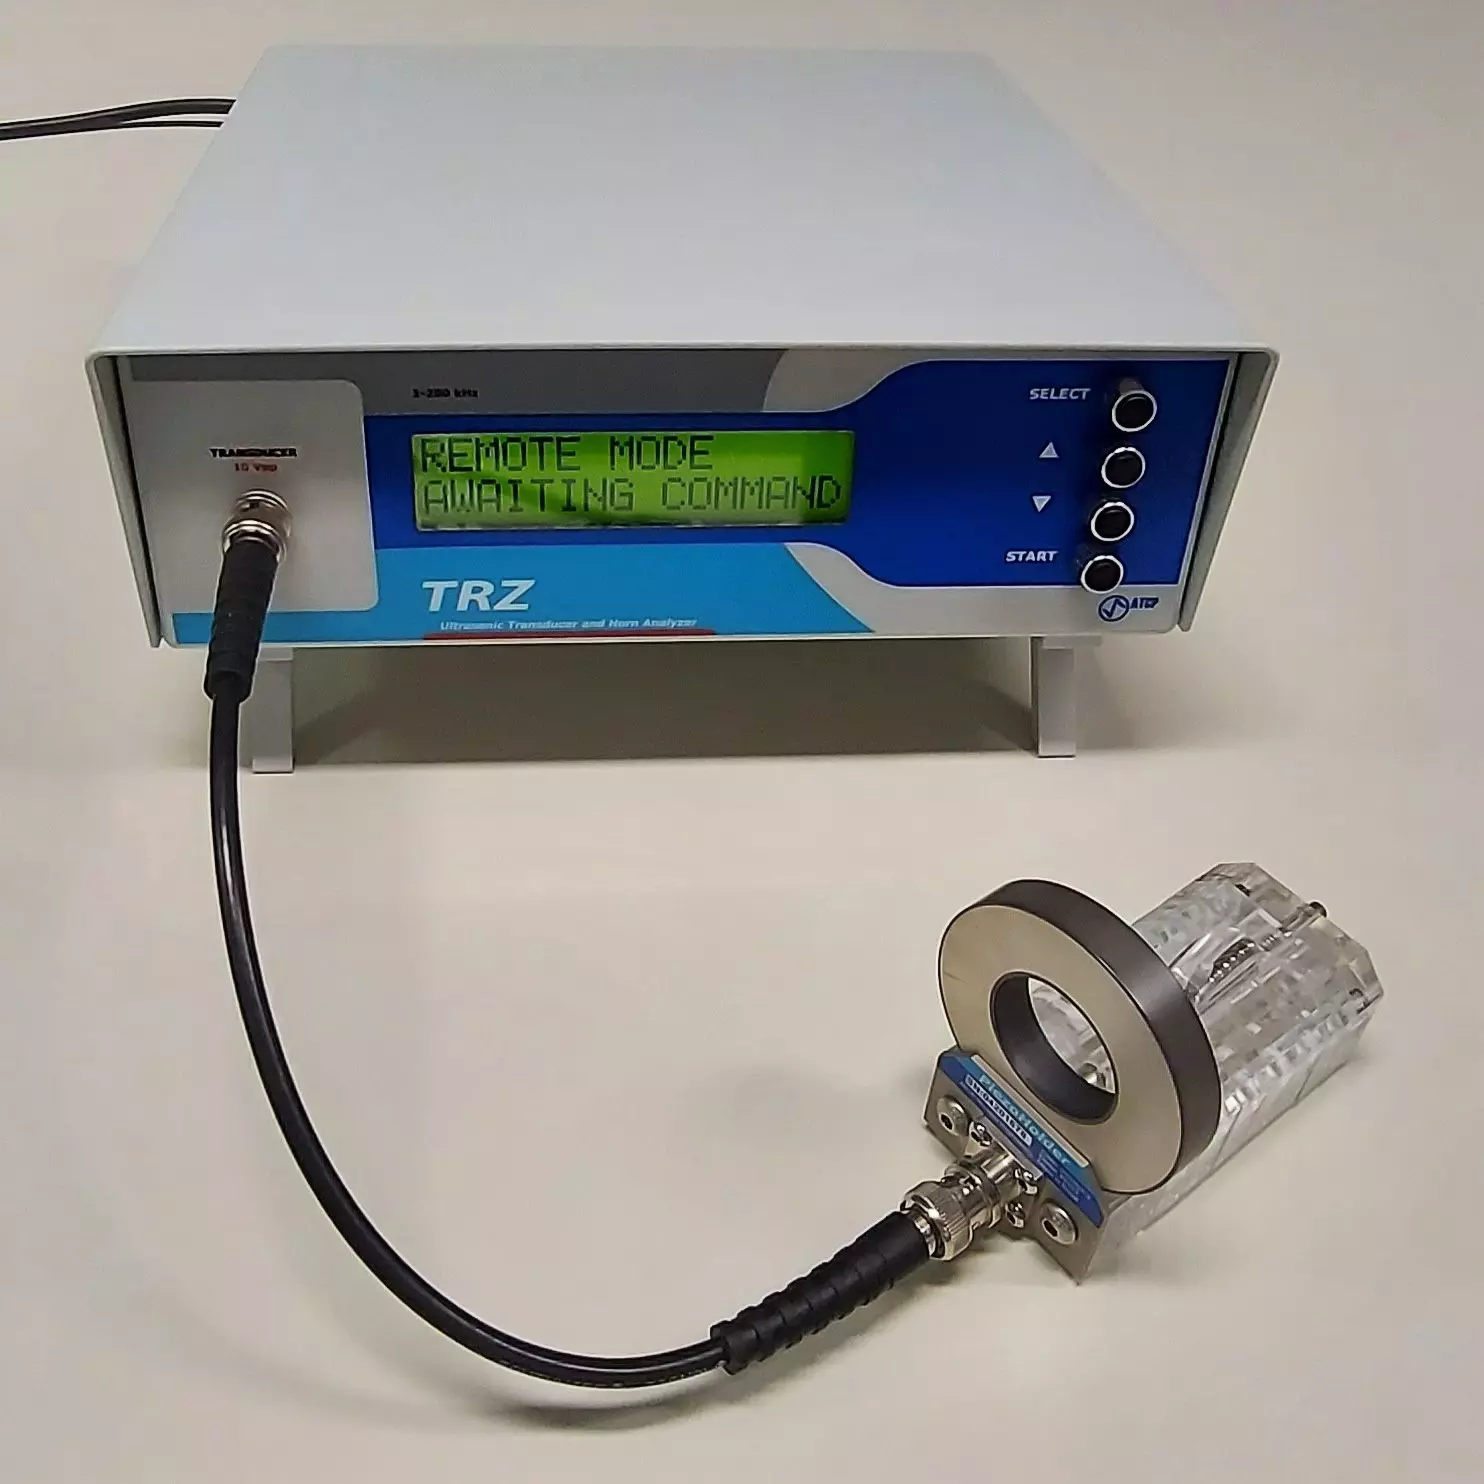 TRZ Analyzer with PiezoHolder testing a piezoelectric ceramic.